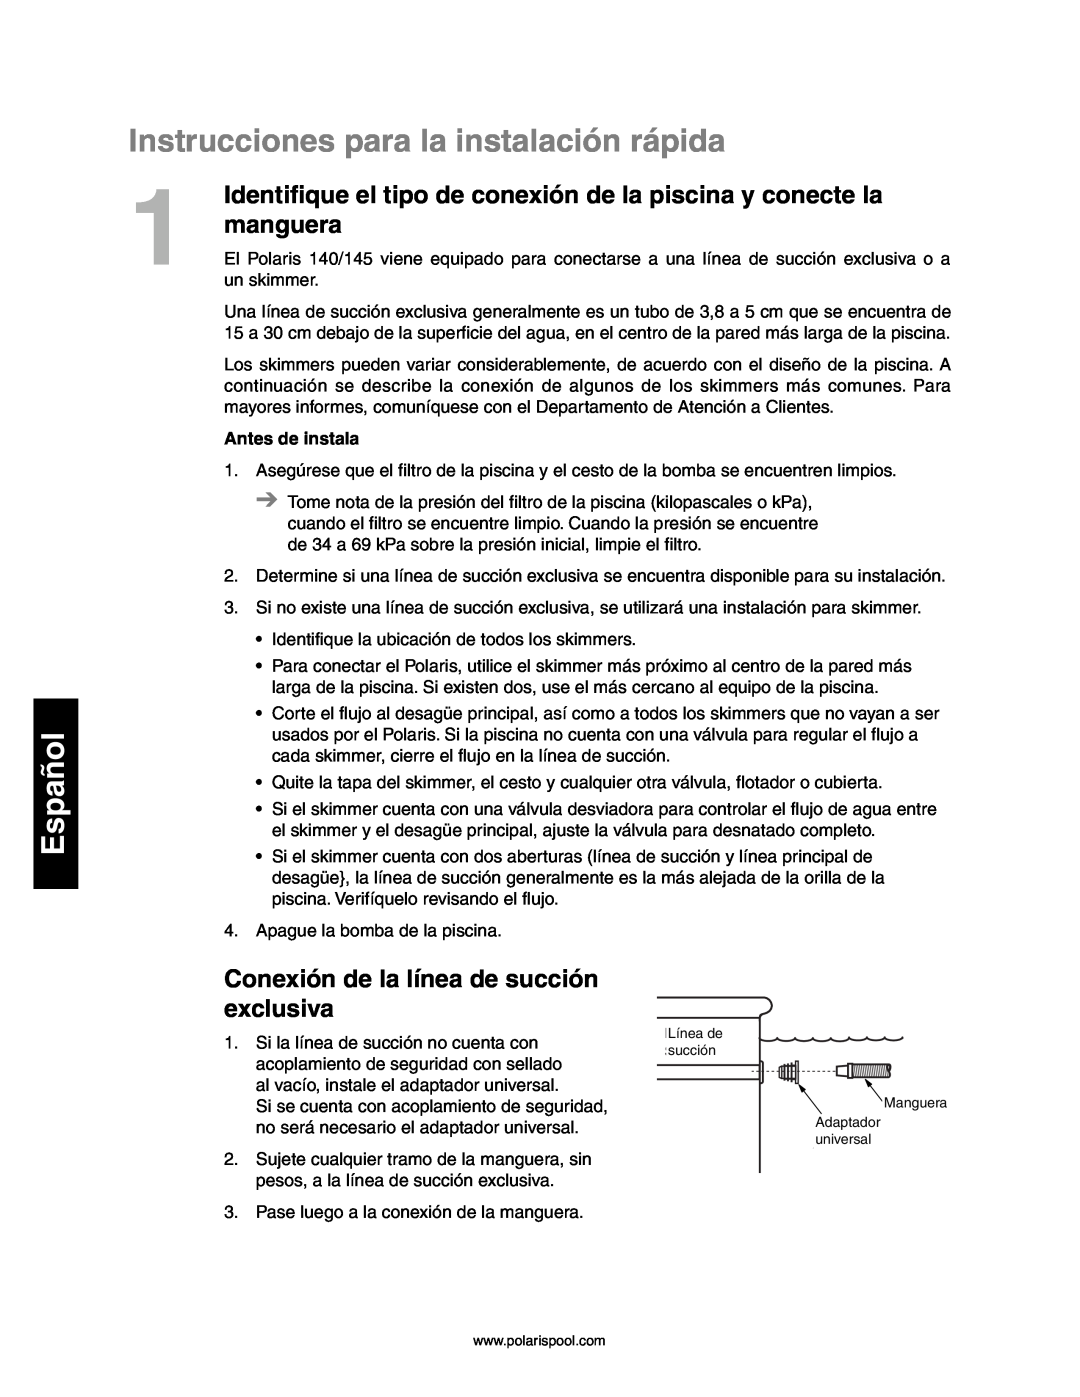 Polaris 140, 145 Instrucciones para la instalación rápida, manguera, Conexión de la línea de succión exclusiva, Español 